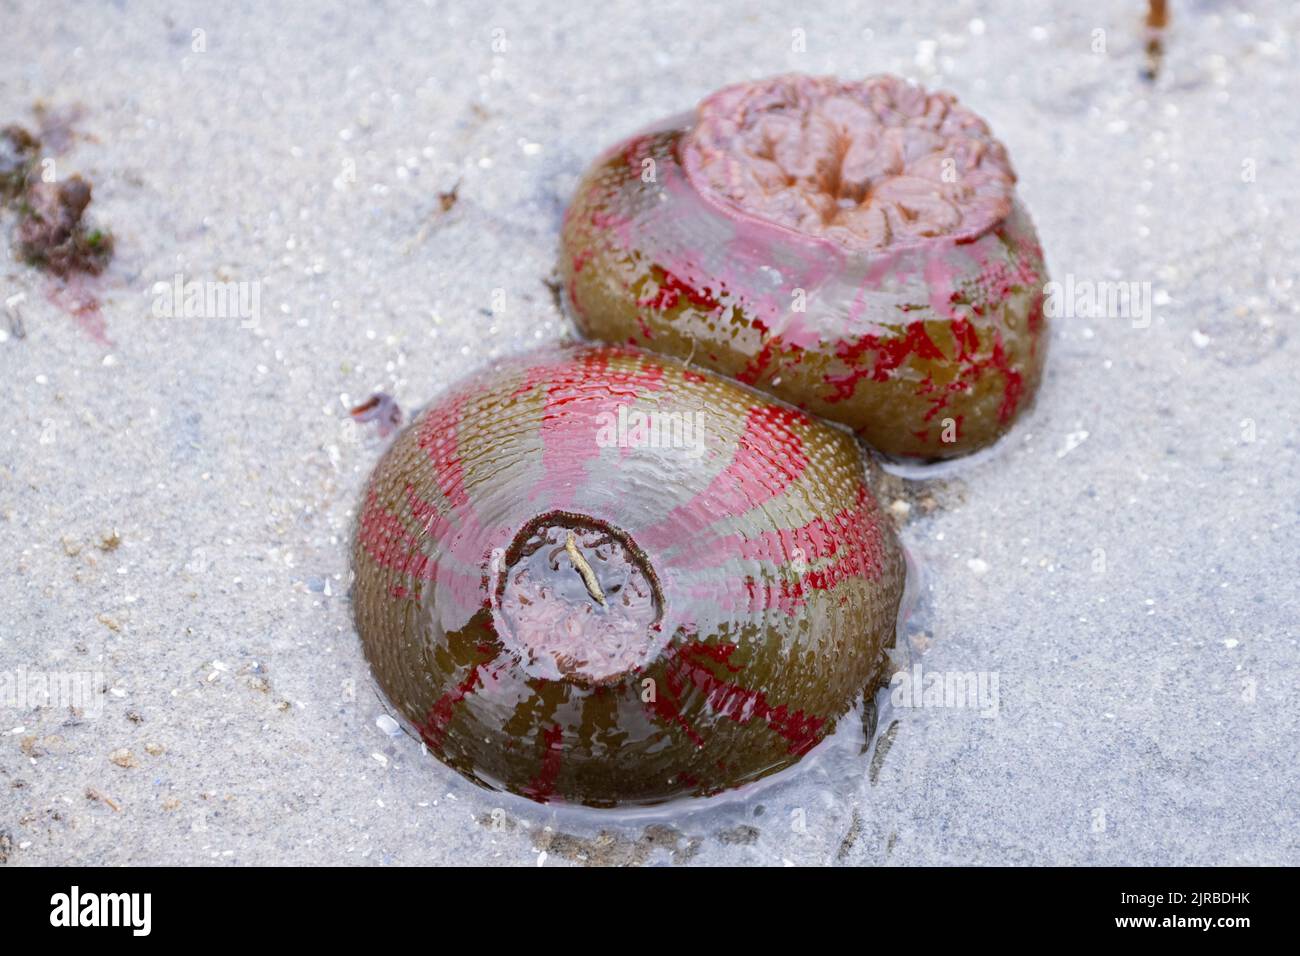 USA, SE Alaska, Inside Passage, Wood Spit. Warty painted anemone aka Christmas anemone (Urticina grebelnyi) Stock Photo